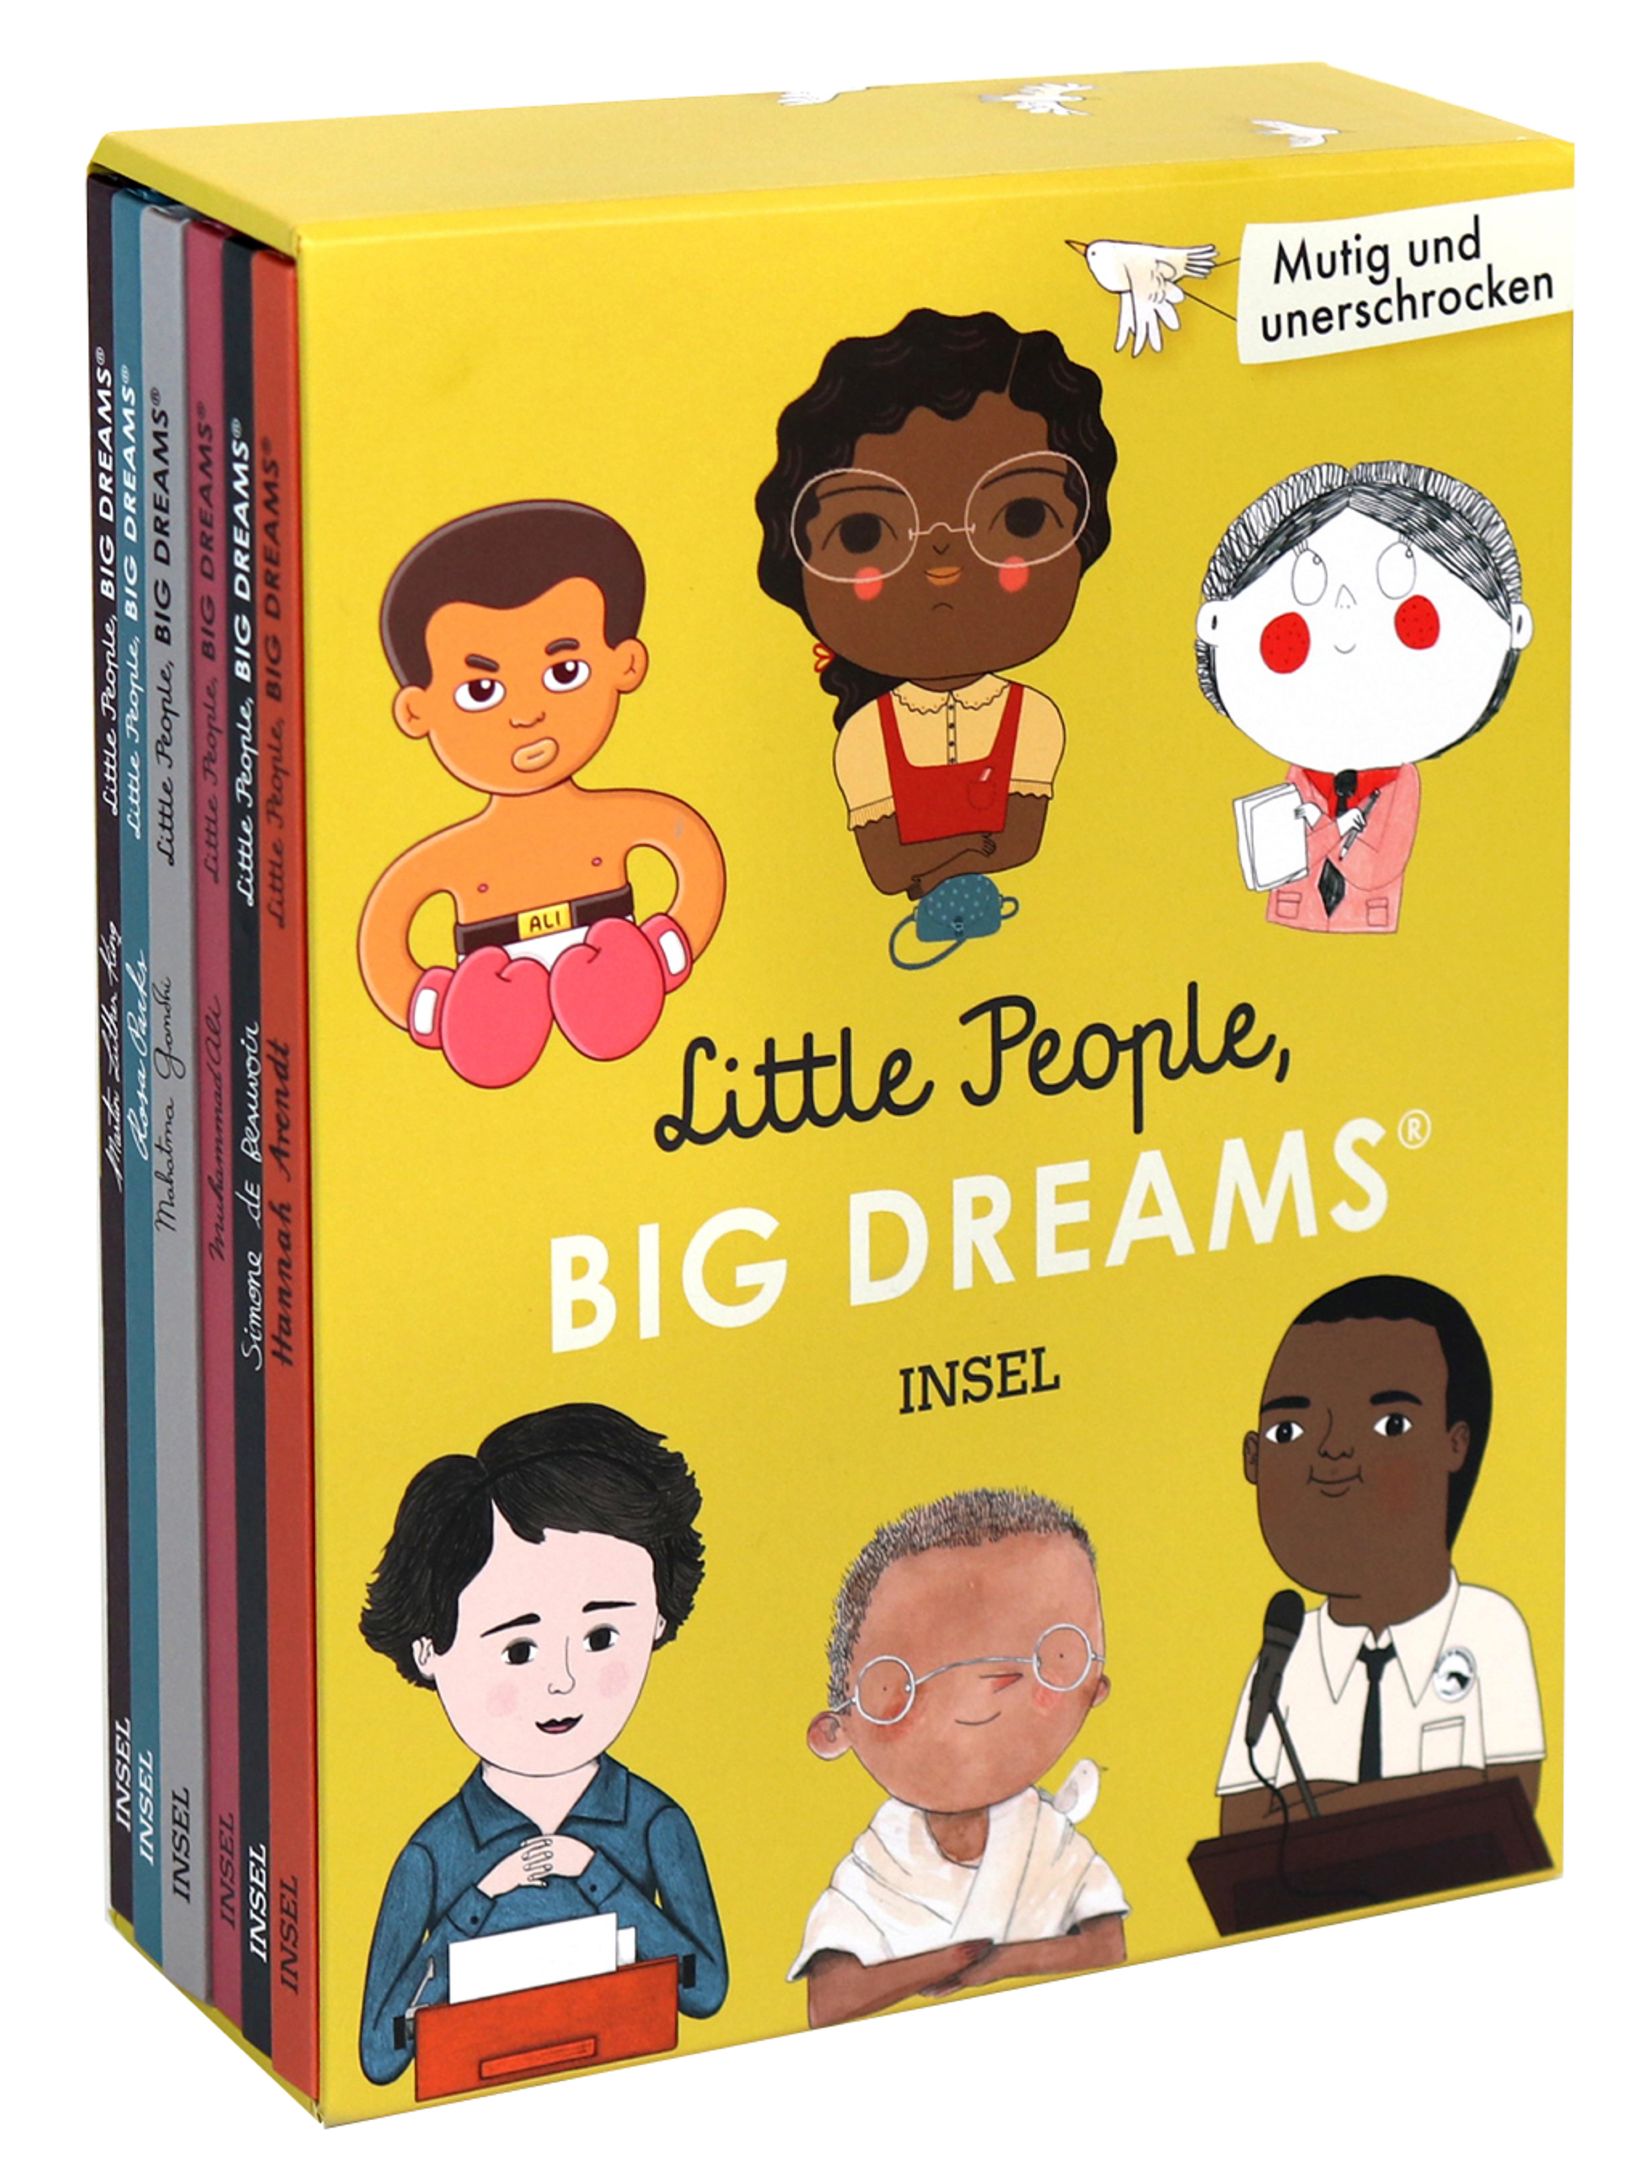 little-people-big-dreams-mutig-und-unerschrocken_9783458179207_cover